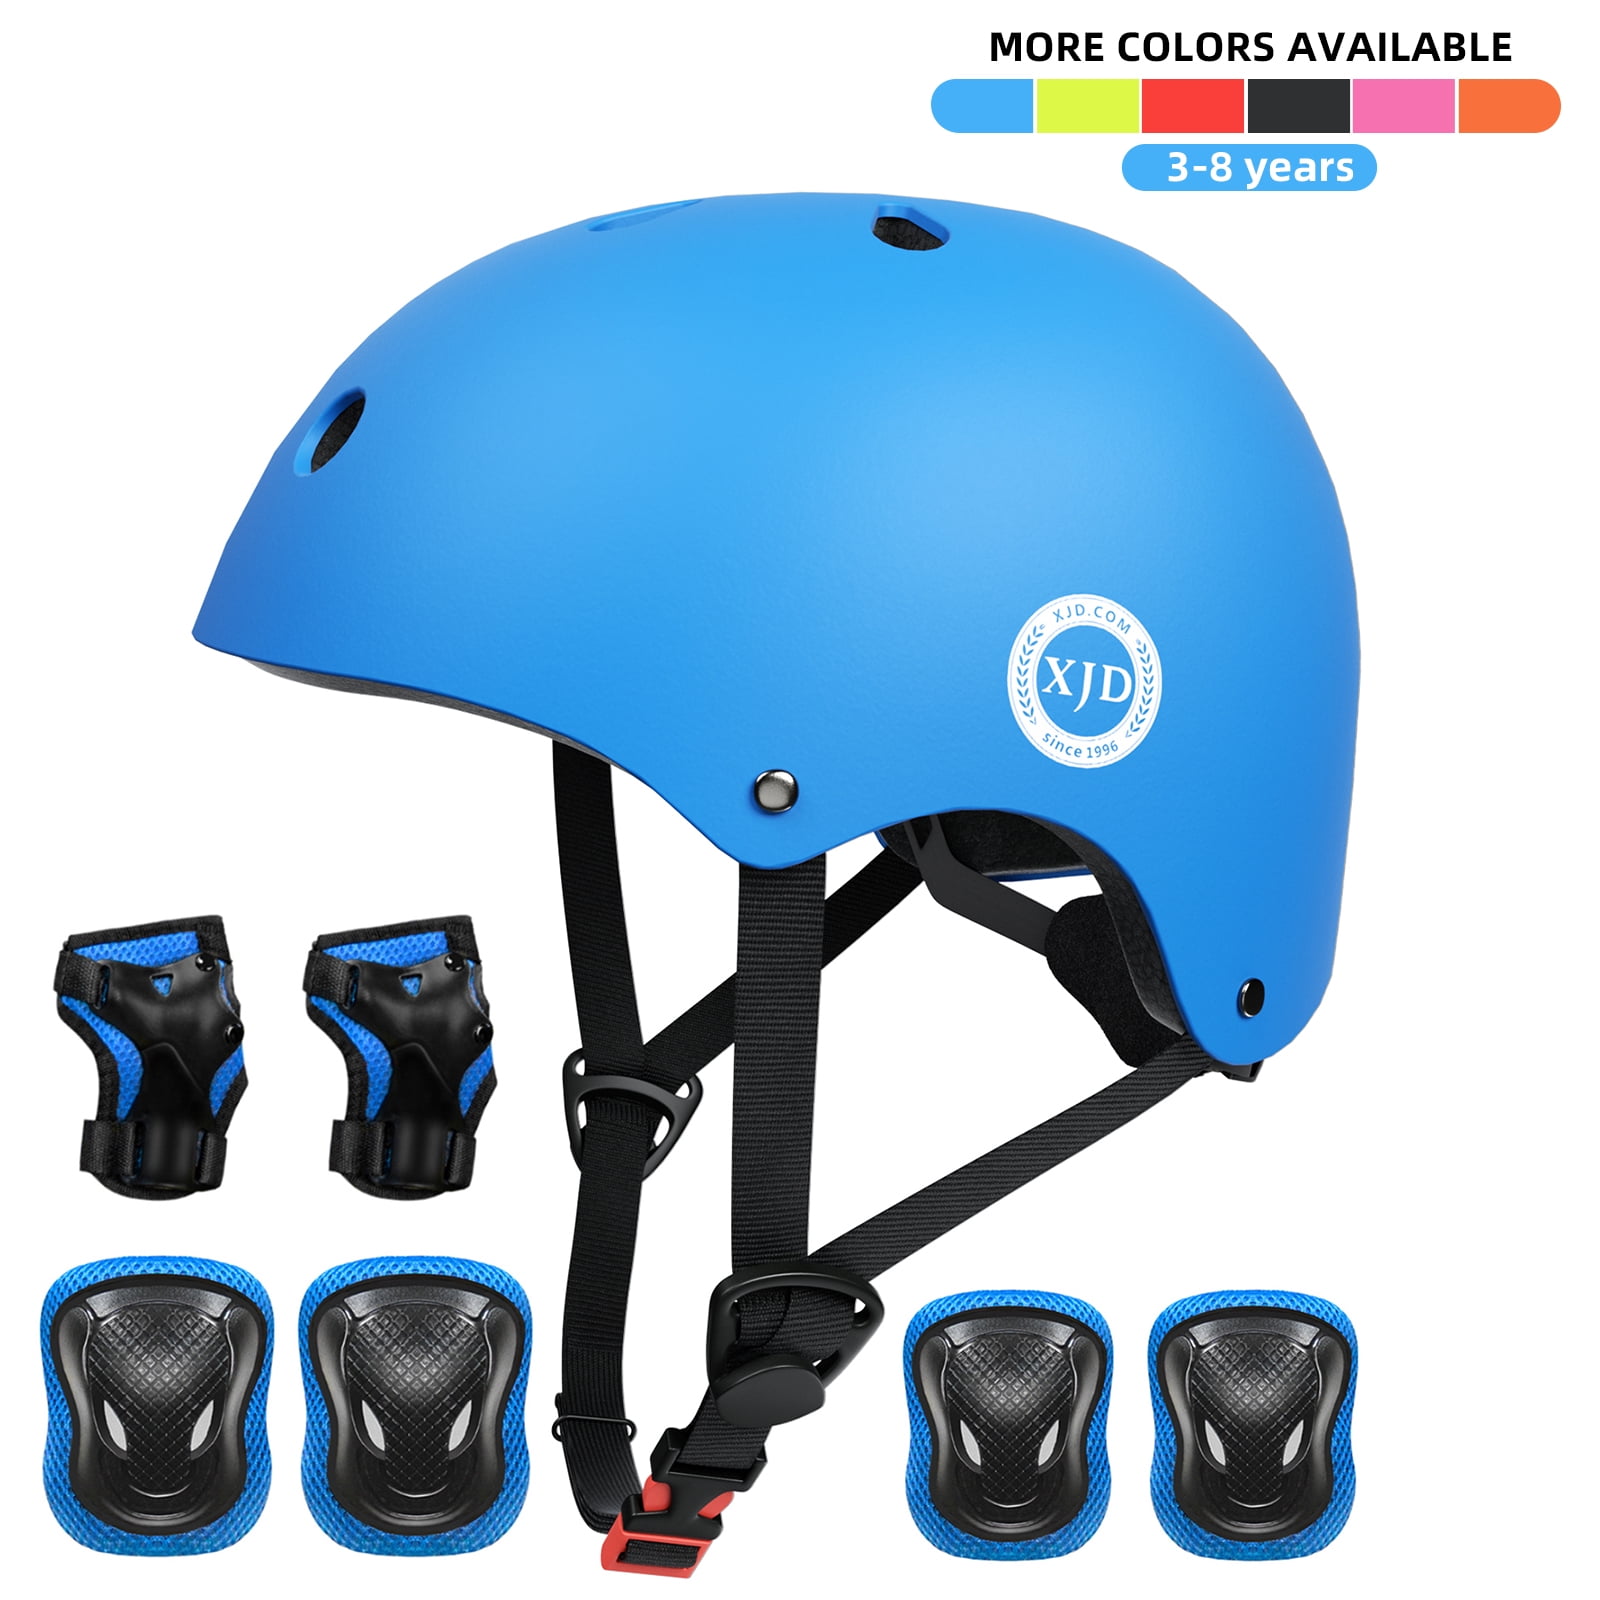 Hot Wheels 3d Kids Ultra-light Bike Helmet Ages 5 to 8 Toddler Lights up for sale online 